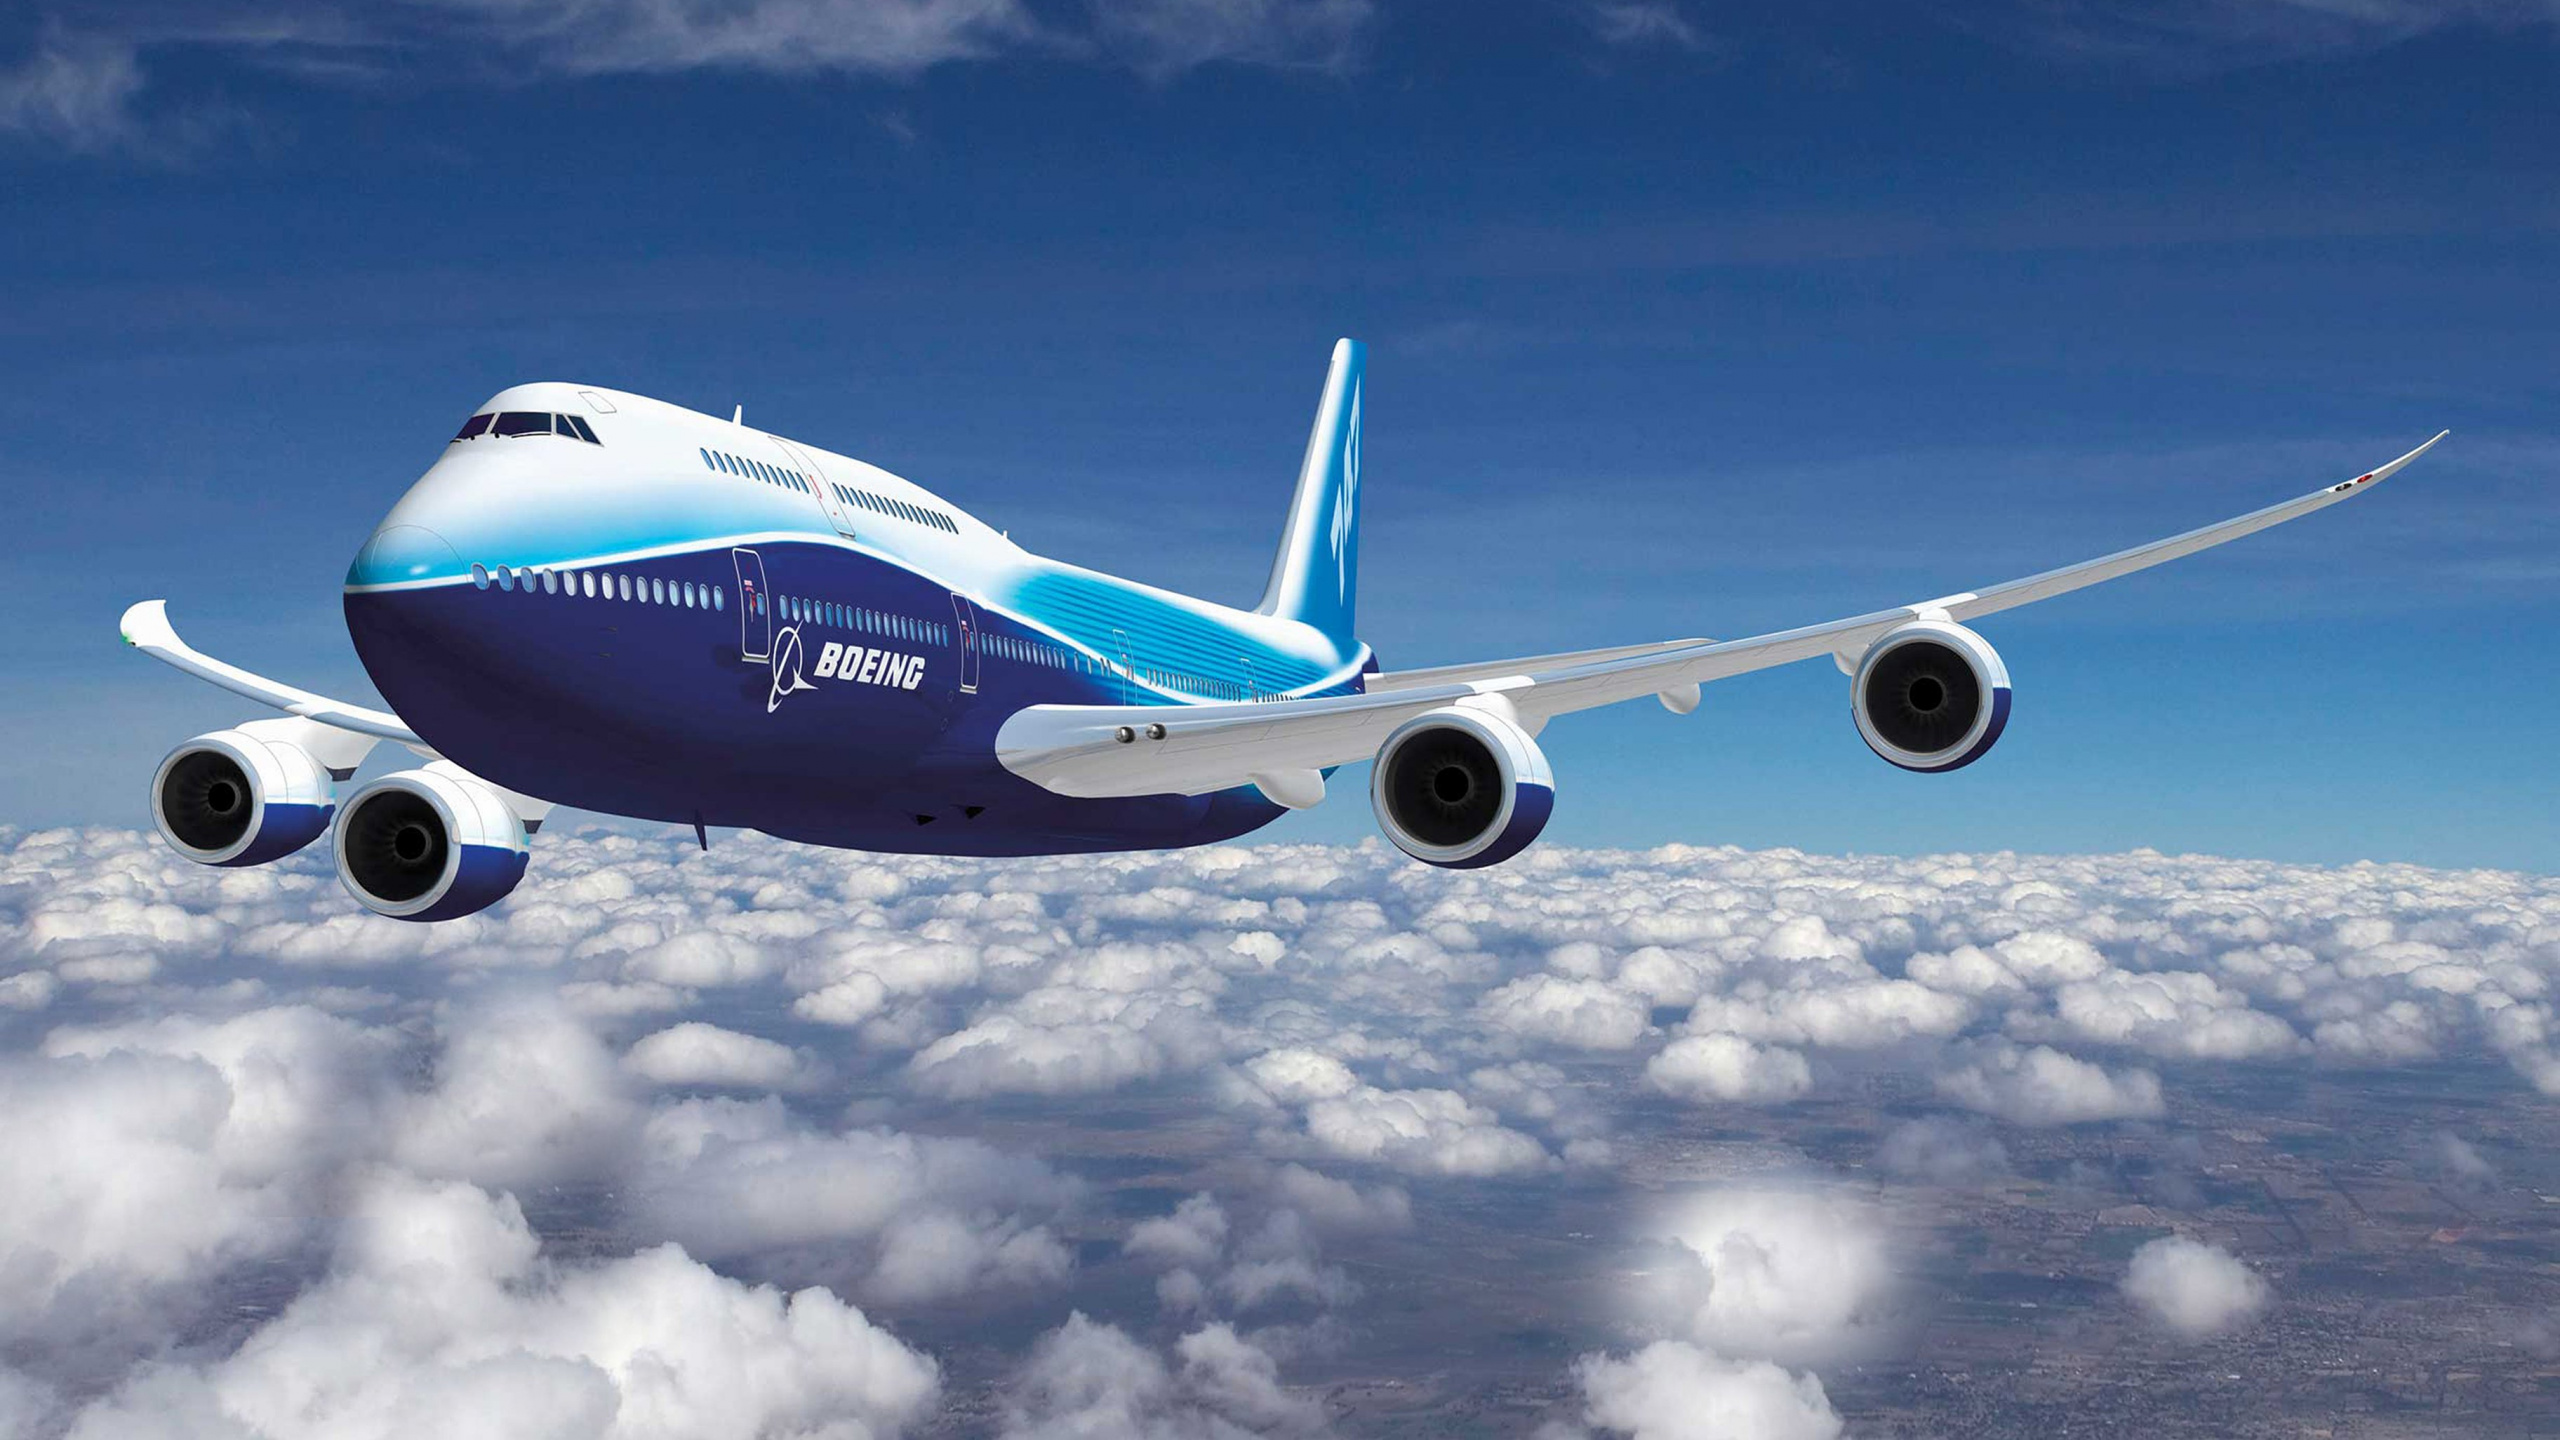 Avion Blanc et Bleu Volant Sous un Ciel Bleu Pendant la Journée. Wallpaper in 2560x1440 Resolution